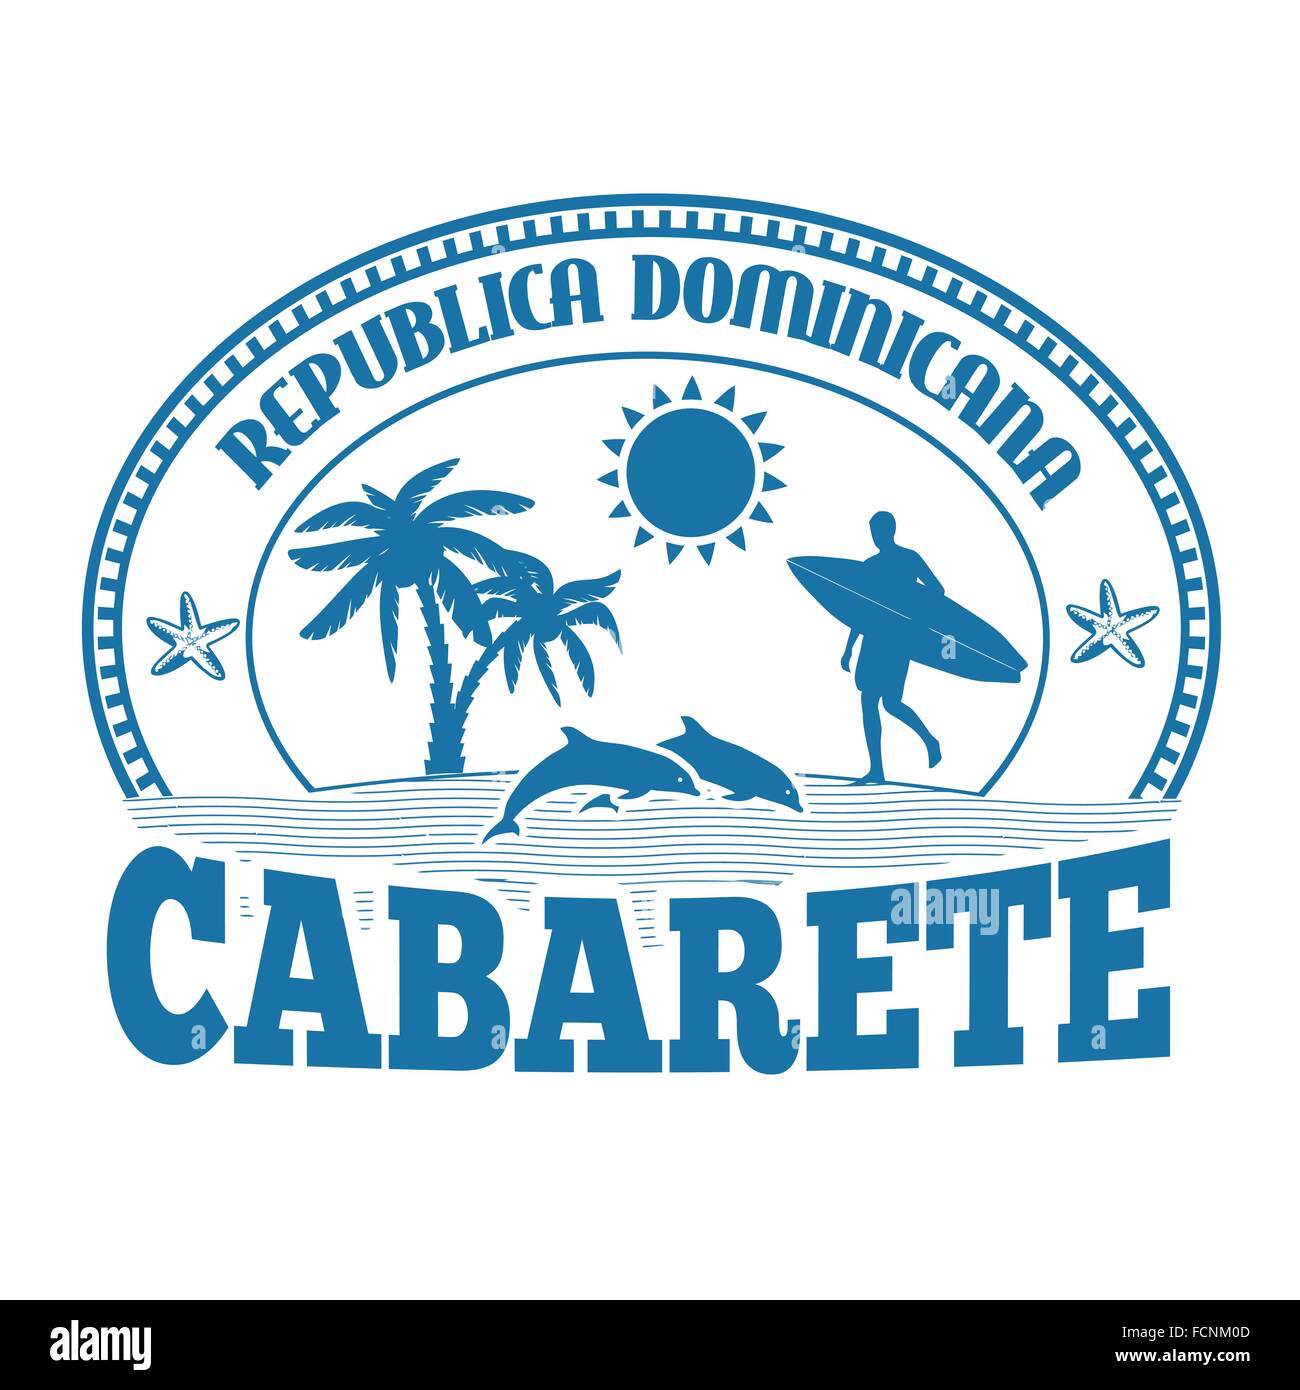 Cabarete, Dominikanische Republik, Stempel oder Beschriftung auf weißem Hintergrund, Vektor-illustration Stock Vektor